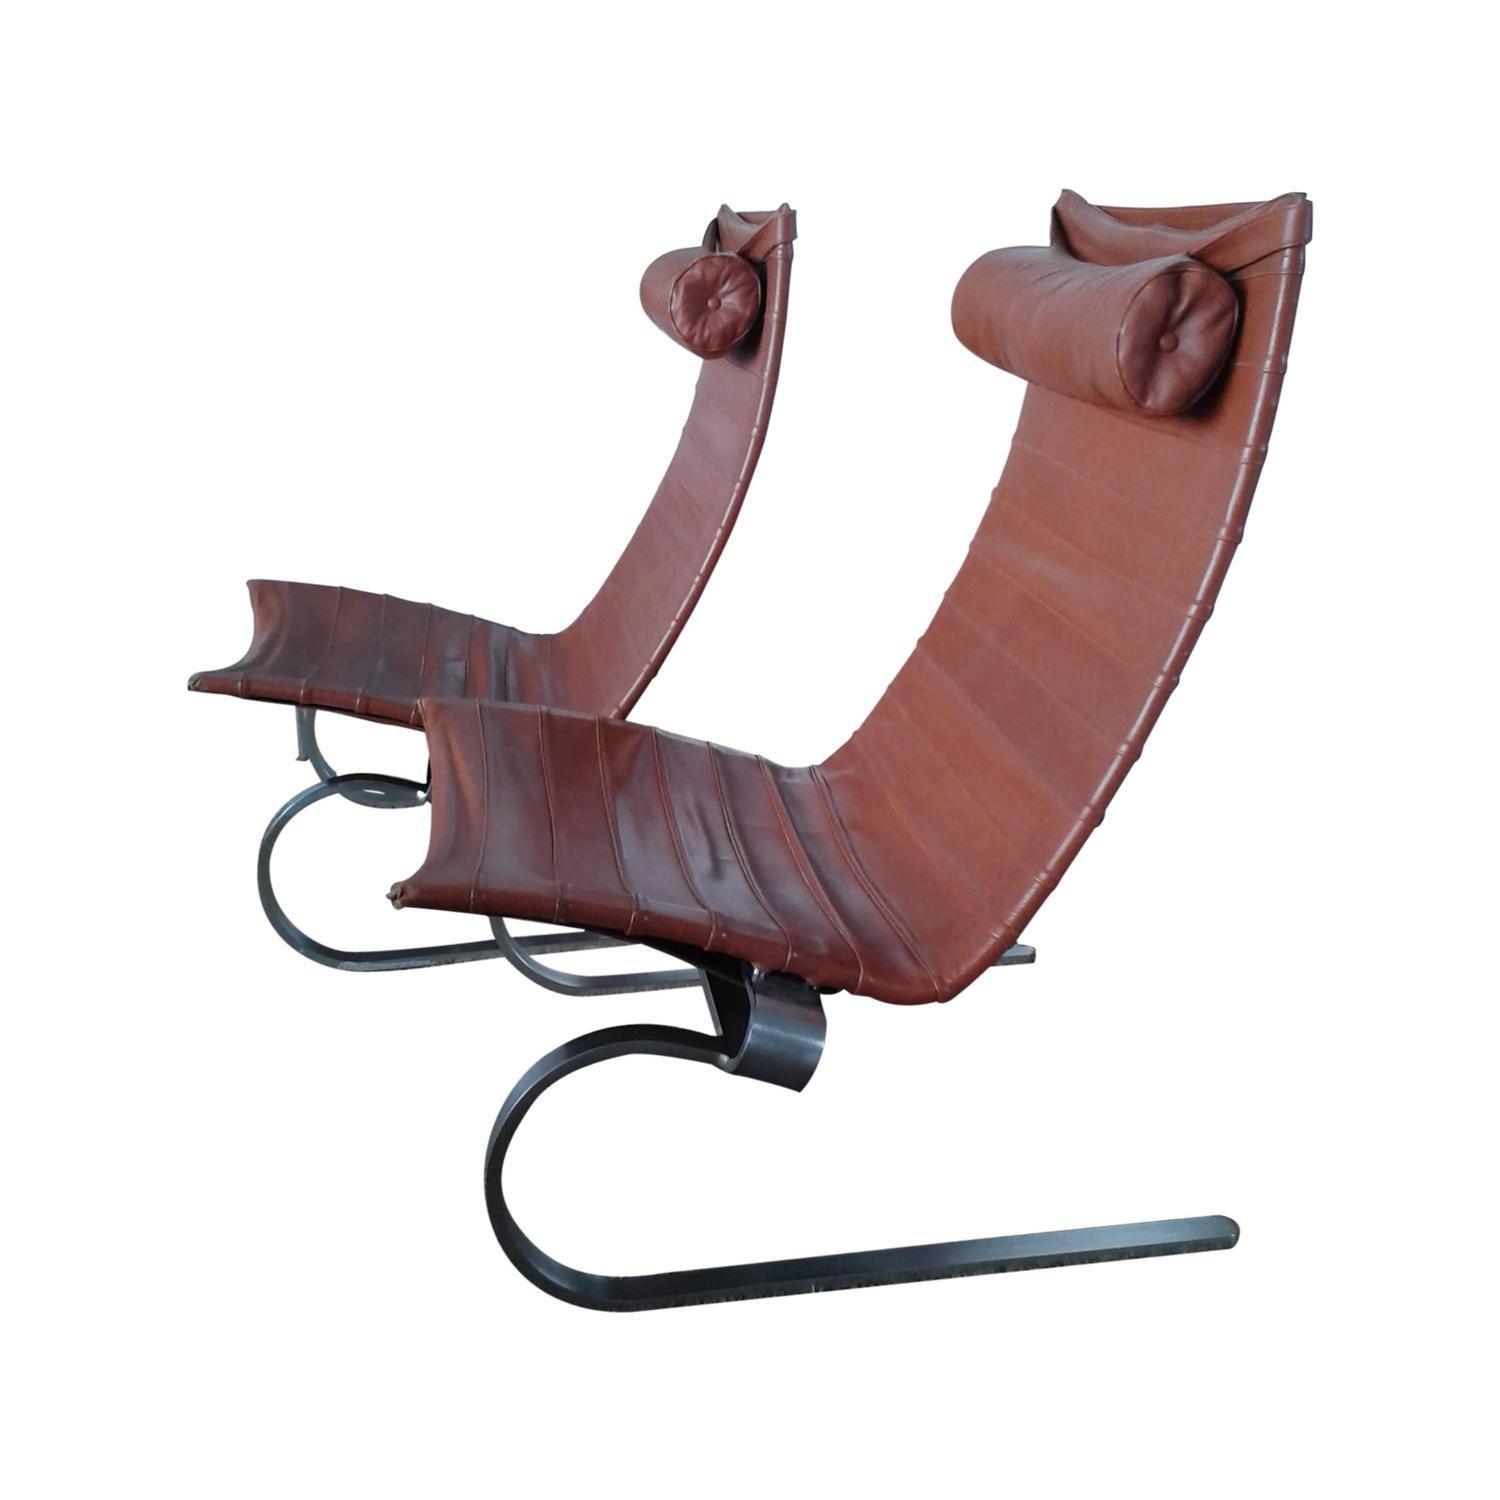 PK 20 est une chaise de salon décontractée et élégante en cuir original, construite sur un cadre flexible en acier à ressorts chromé mat. La belle courbe des pieds et le cadre flottant distinguent cette chaise. Chaque chaise est signée et porte la